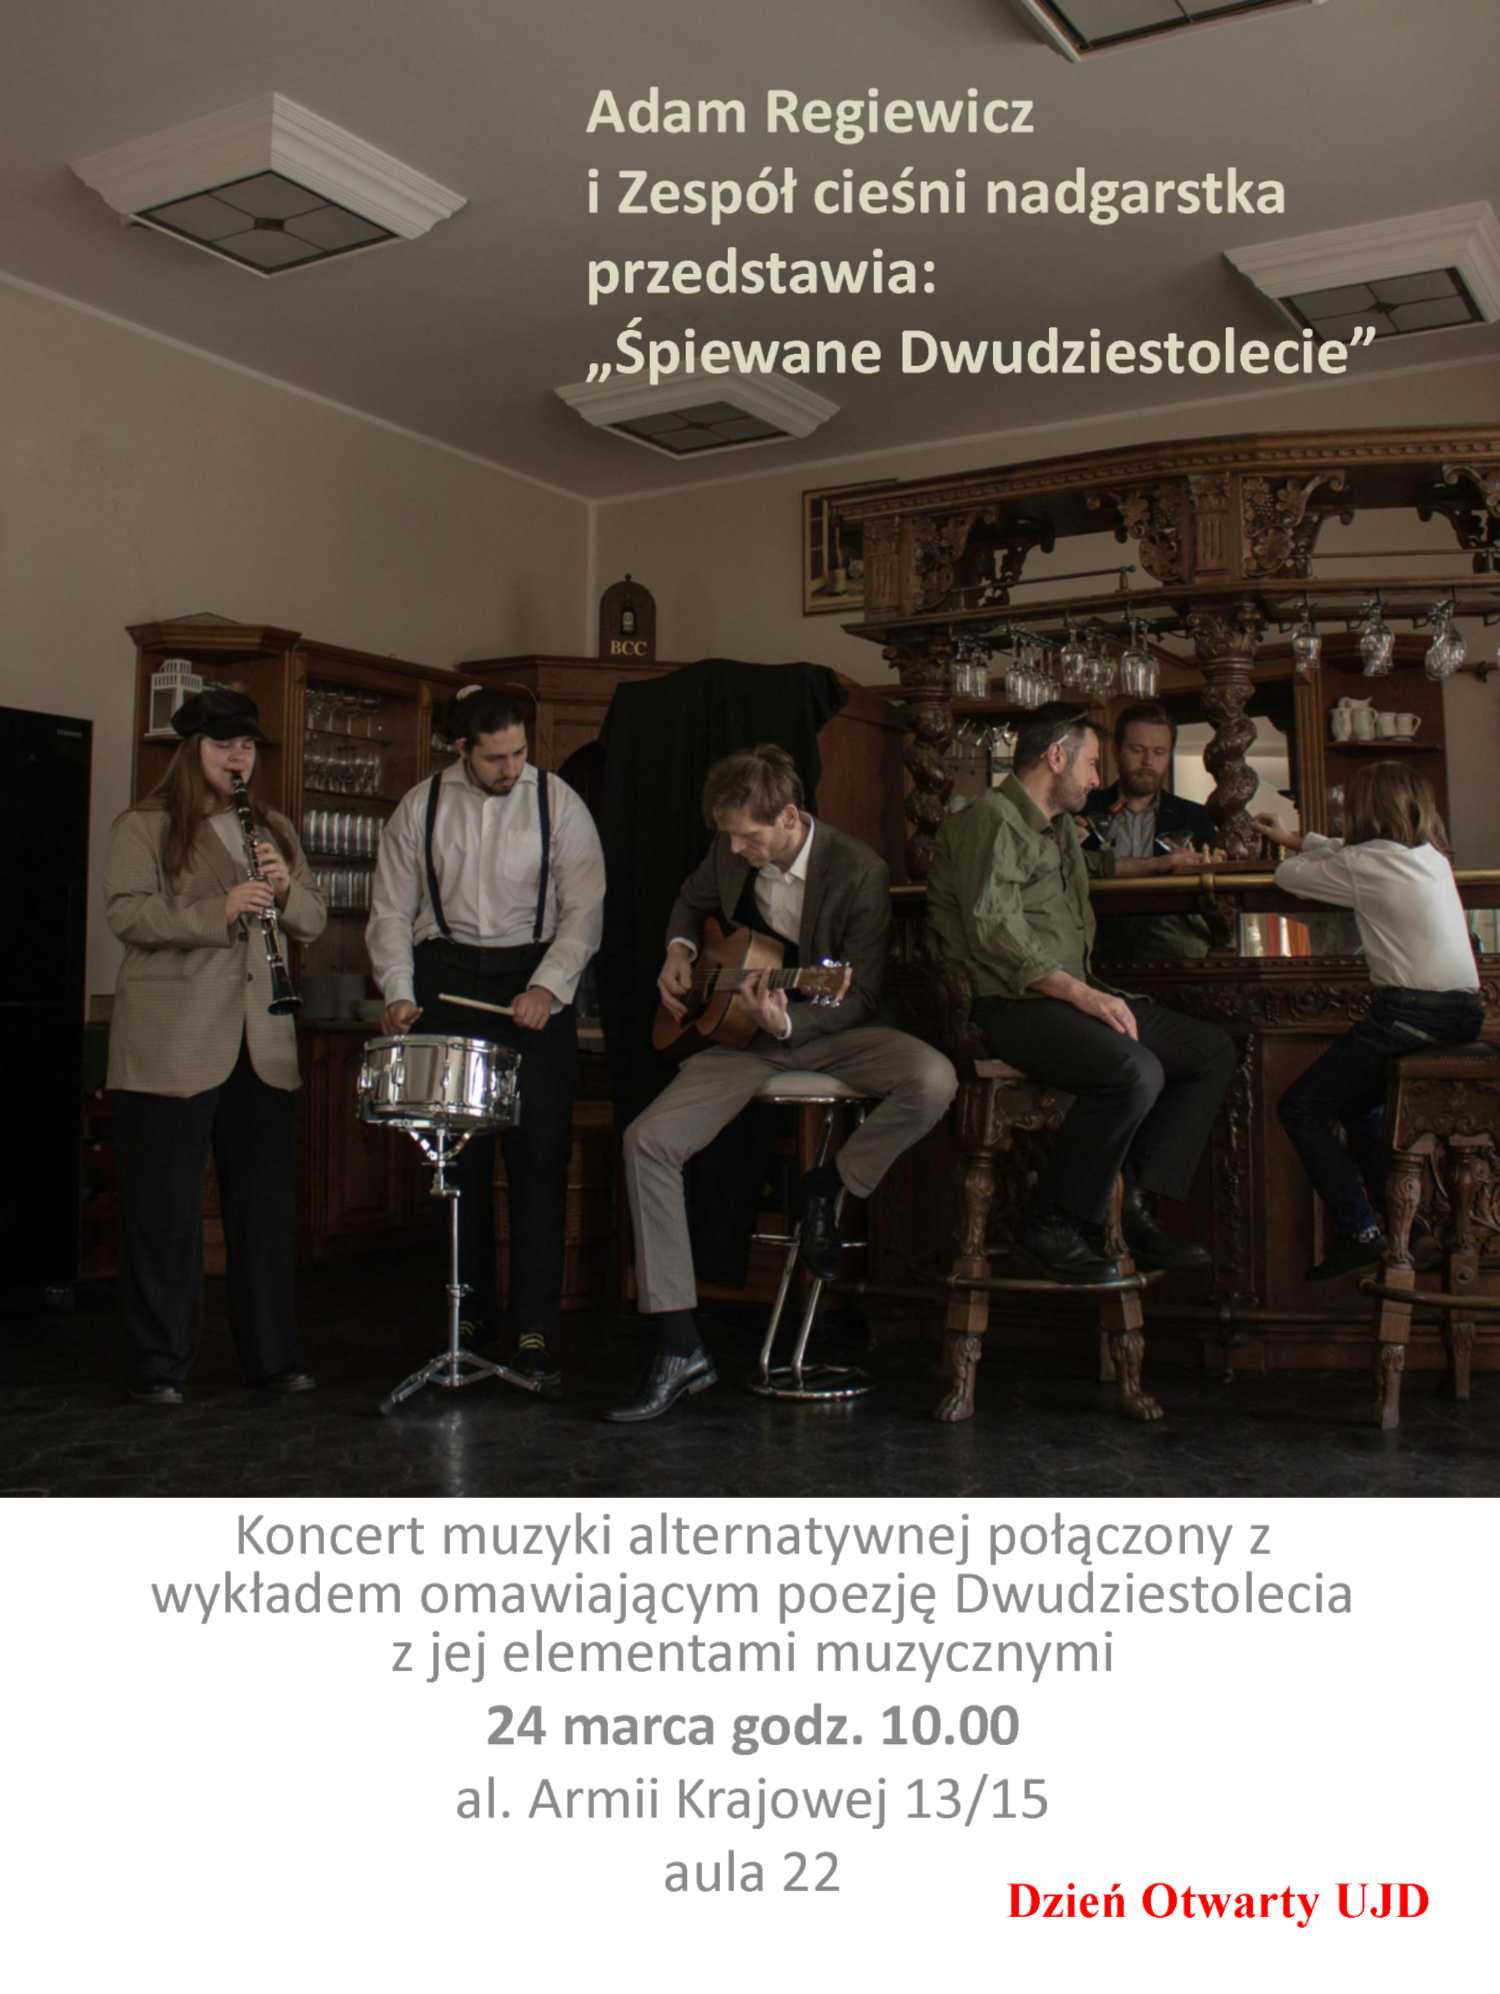 Na zdjęciu: plakat informujący o wydarzeniu, na zdjęciu członkowie zespołu wraz z prof. Adamem Regiewiczem